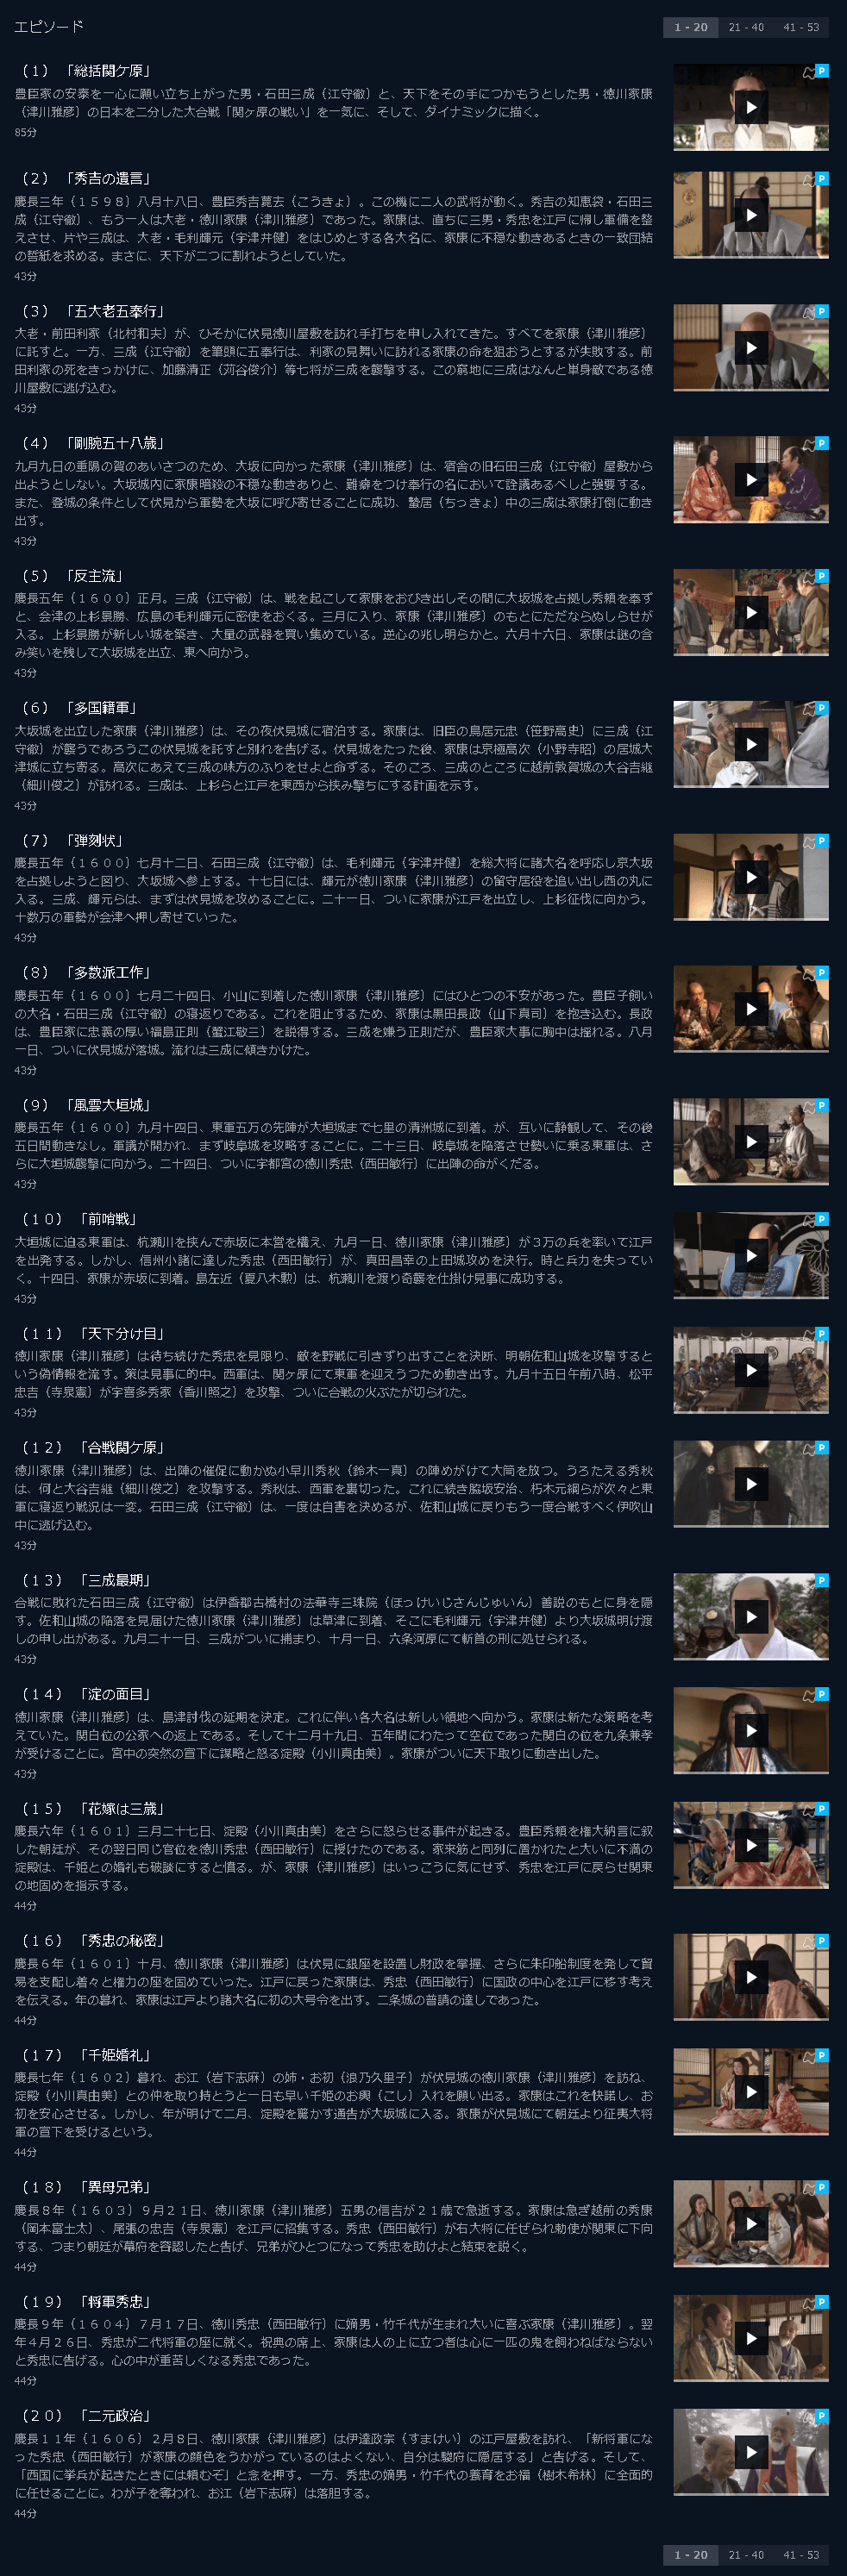 葵 徳川三代 ドラマ1話 全話のフル動画を見るならここ 今すぐ無料で視聴する方法 動画インフォ